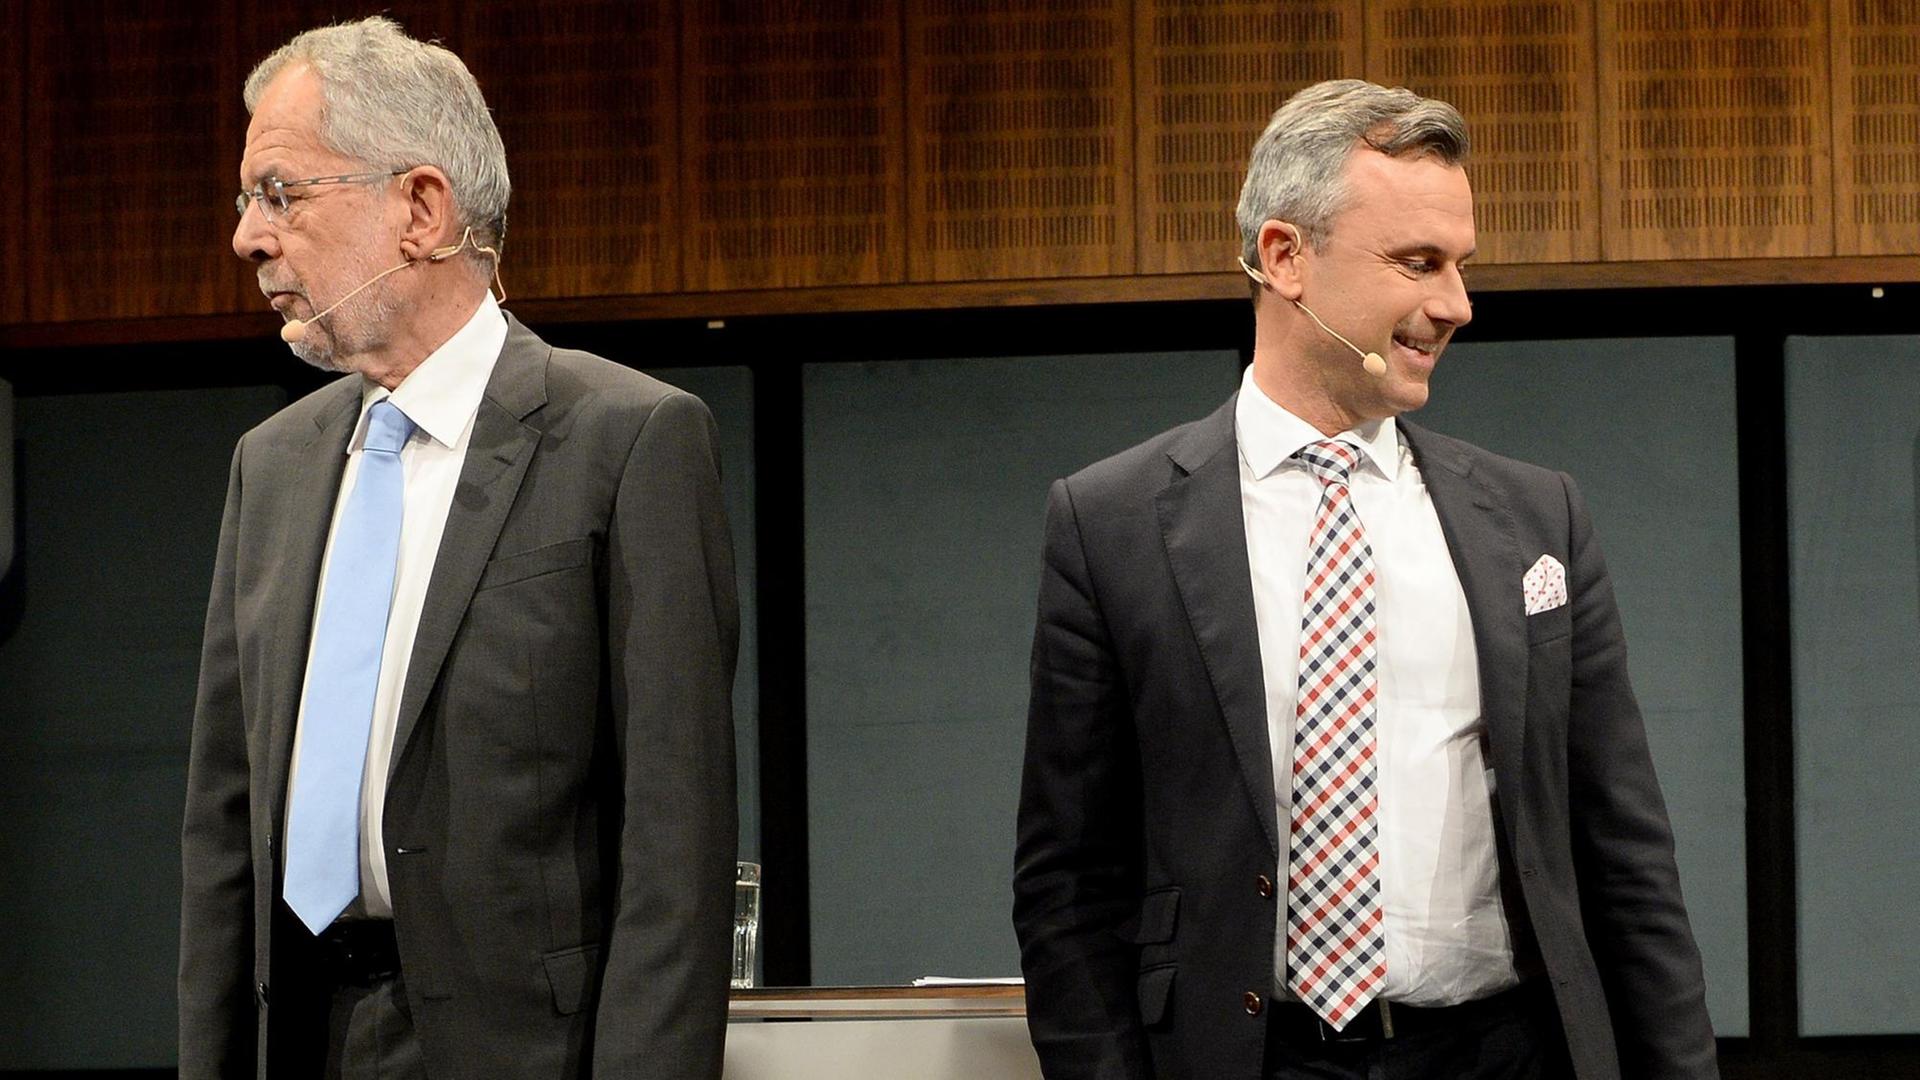 Der FPÖ-Kandidaten Norbert Hofer und der von den Grünen unterstützte Alexander Van der Bellen stehen voneinander abgewandt in der TV-Debatte nebeneinander.